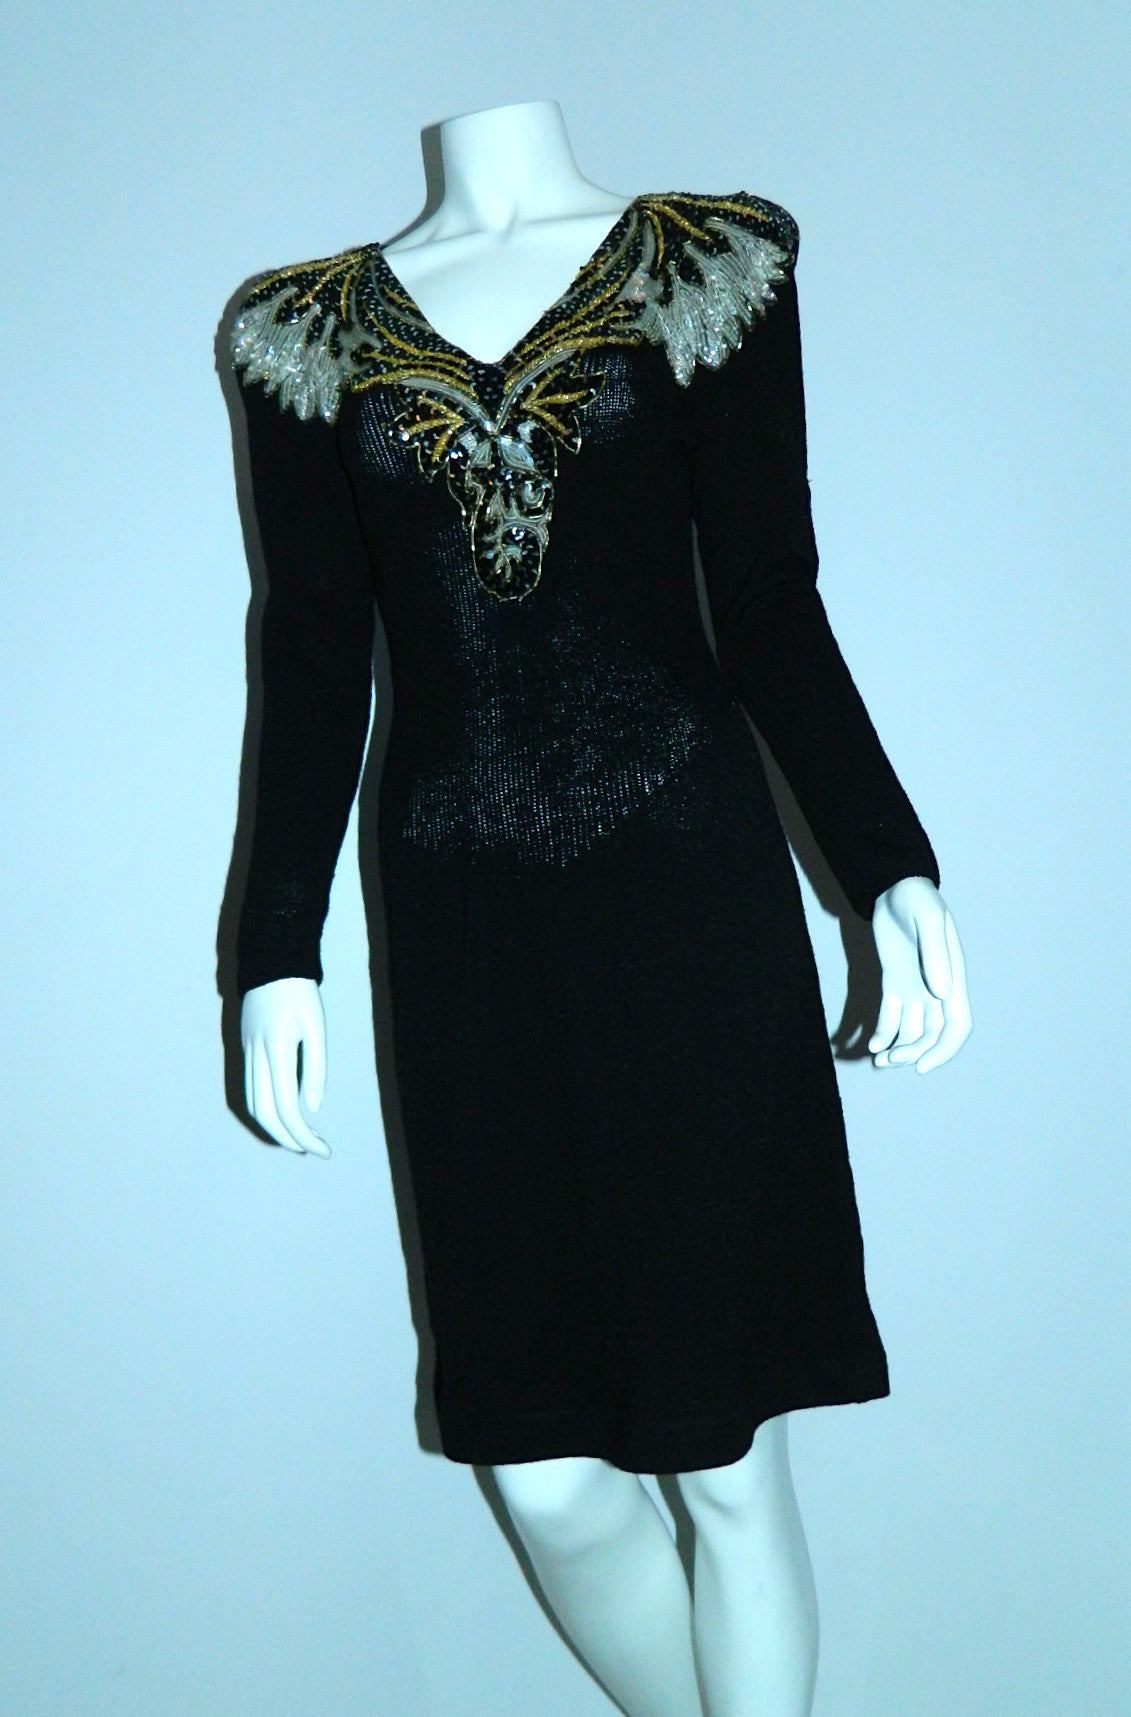 1980s GLAM black dress vintage Pat Sandler Wellmore sequin front knit dress